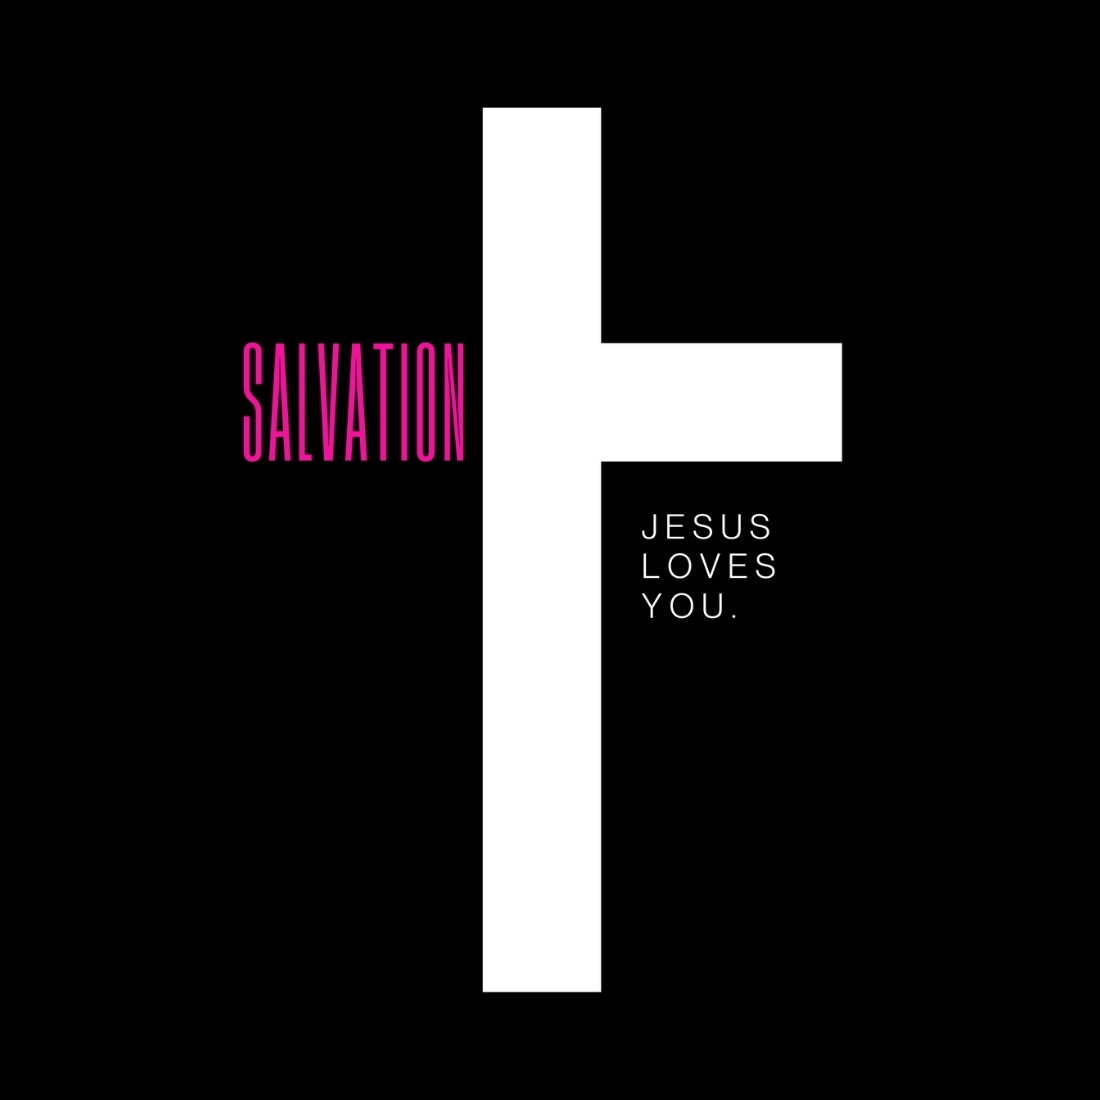 Salvation Jesus Loves You Design SVG, PNG cover image.